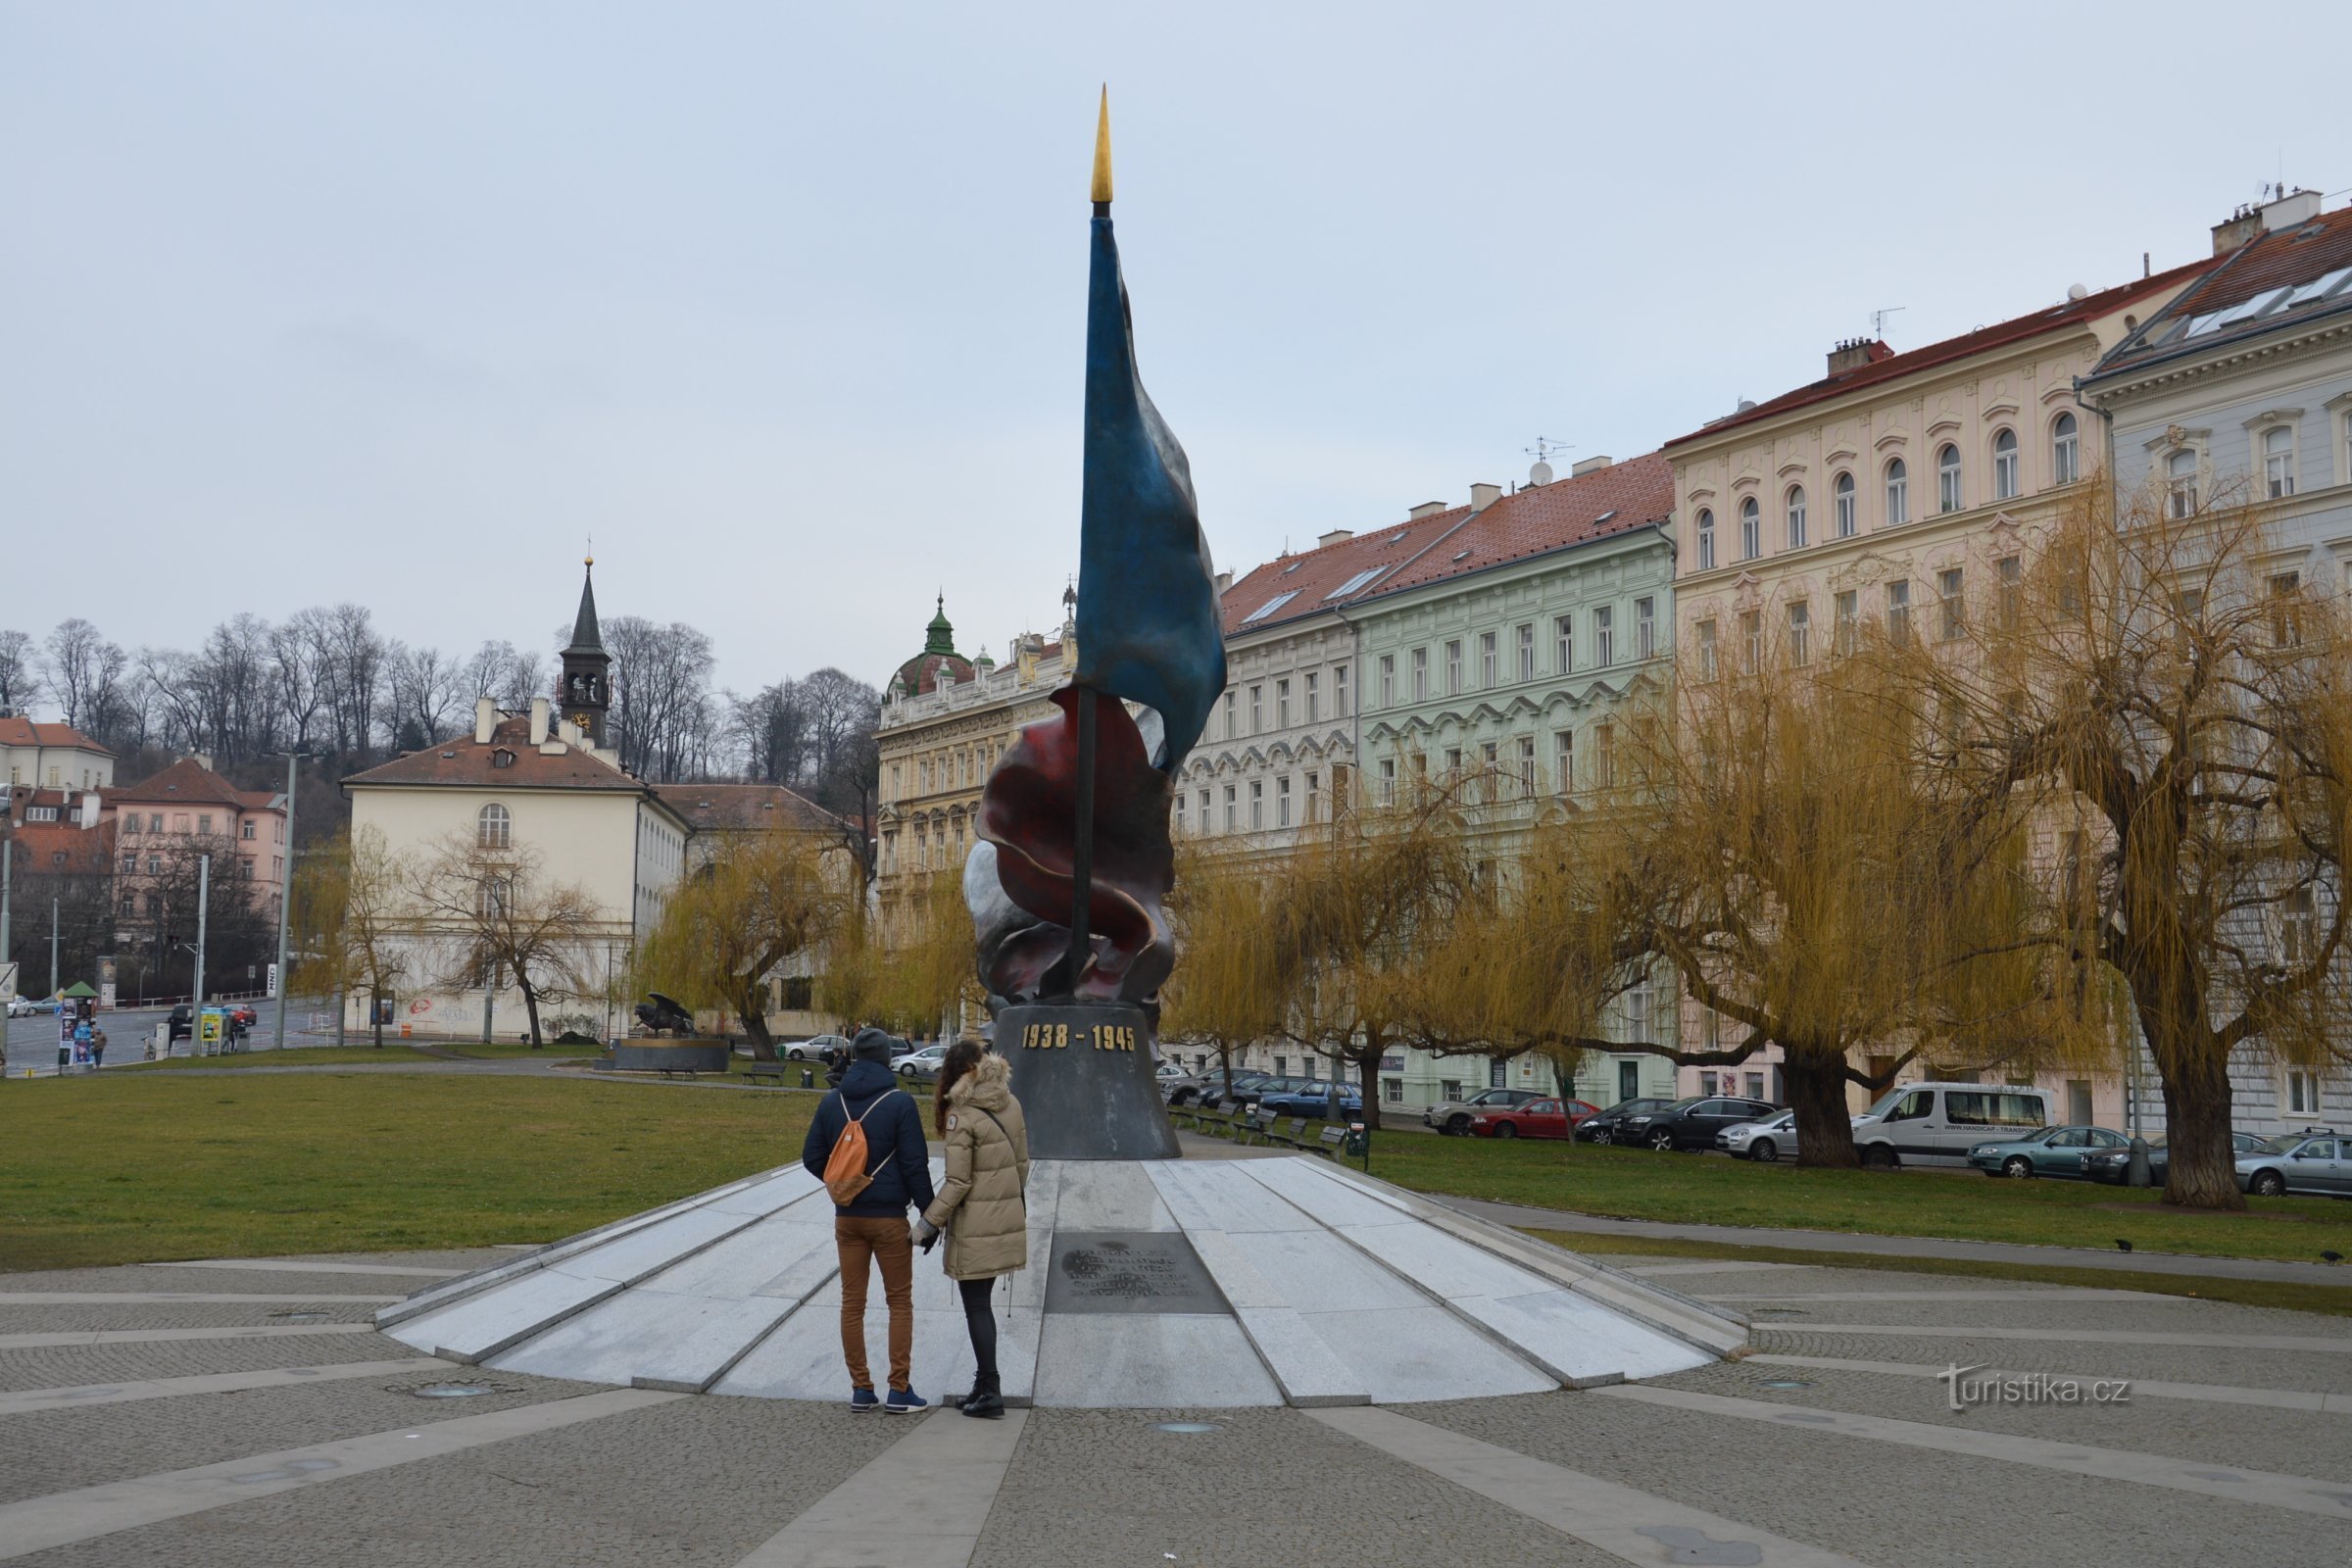 Klárov - monument à la 2e résistance, Institut Klár au fond à gauche